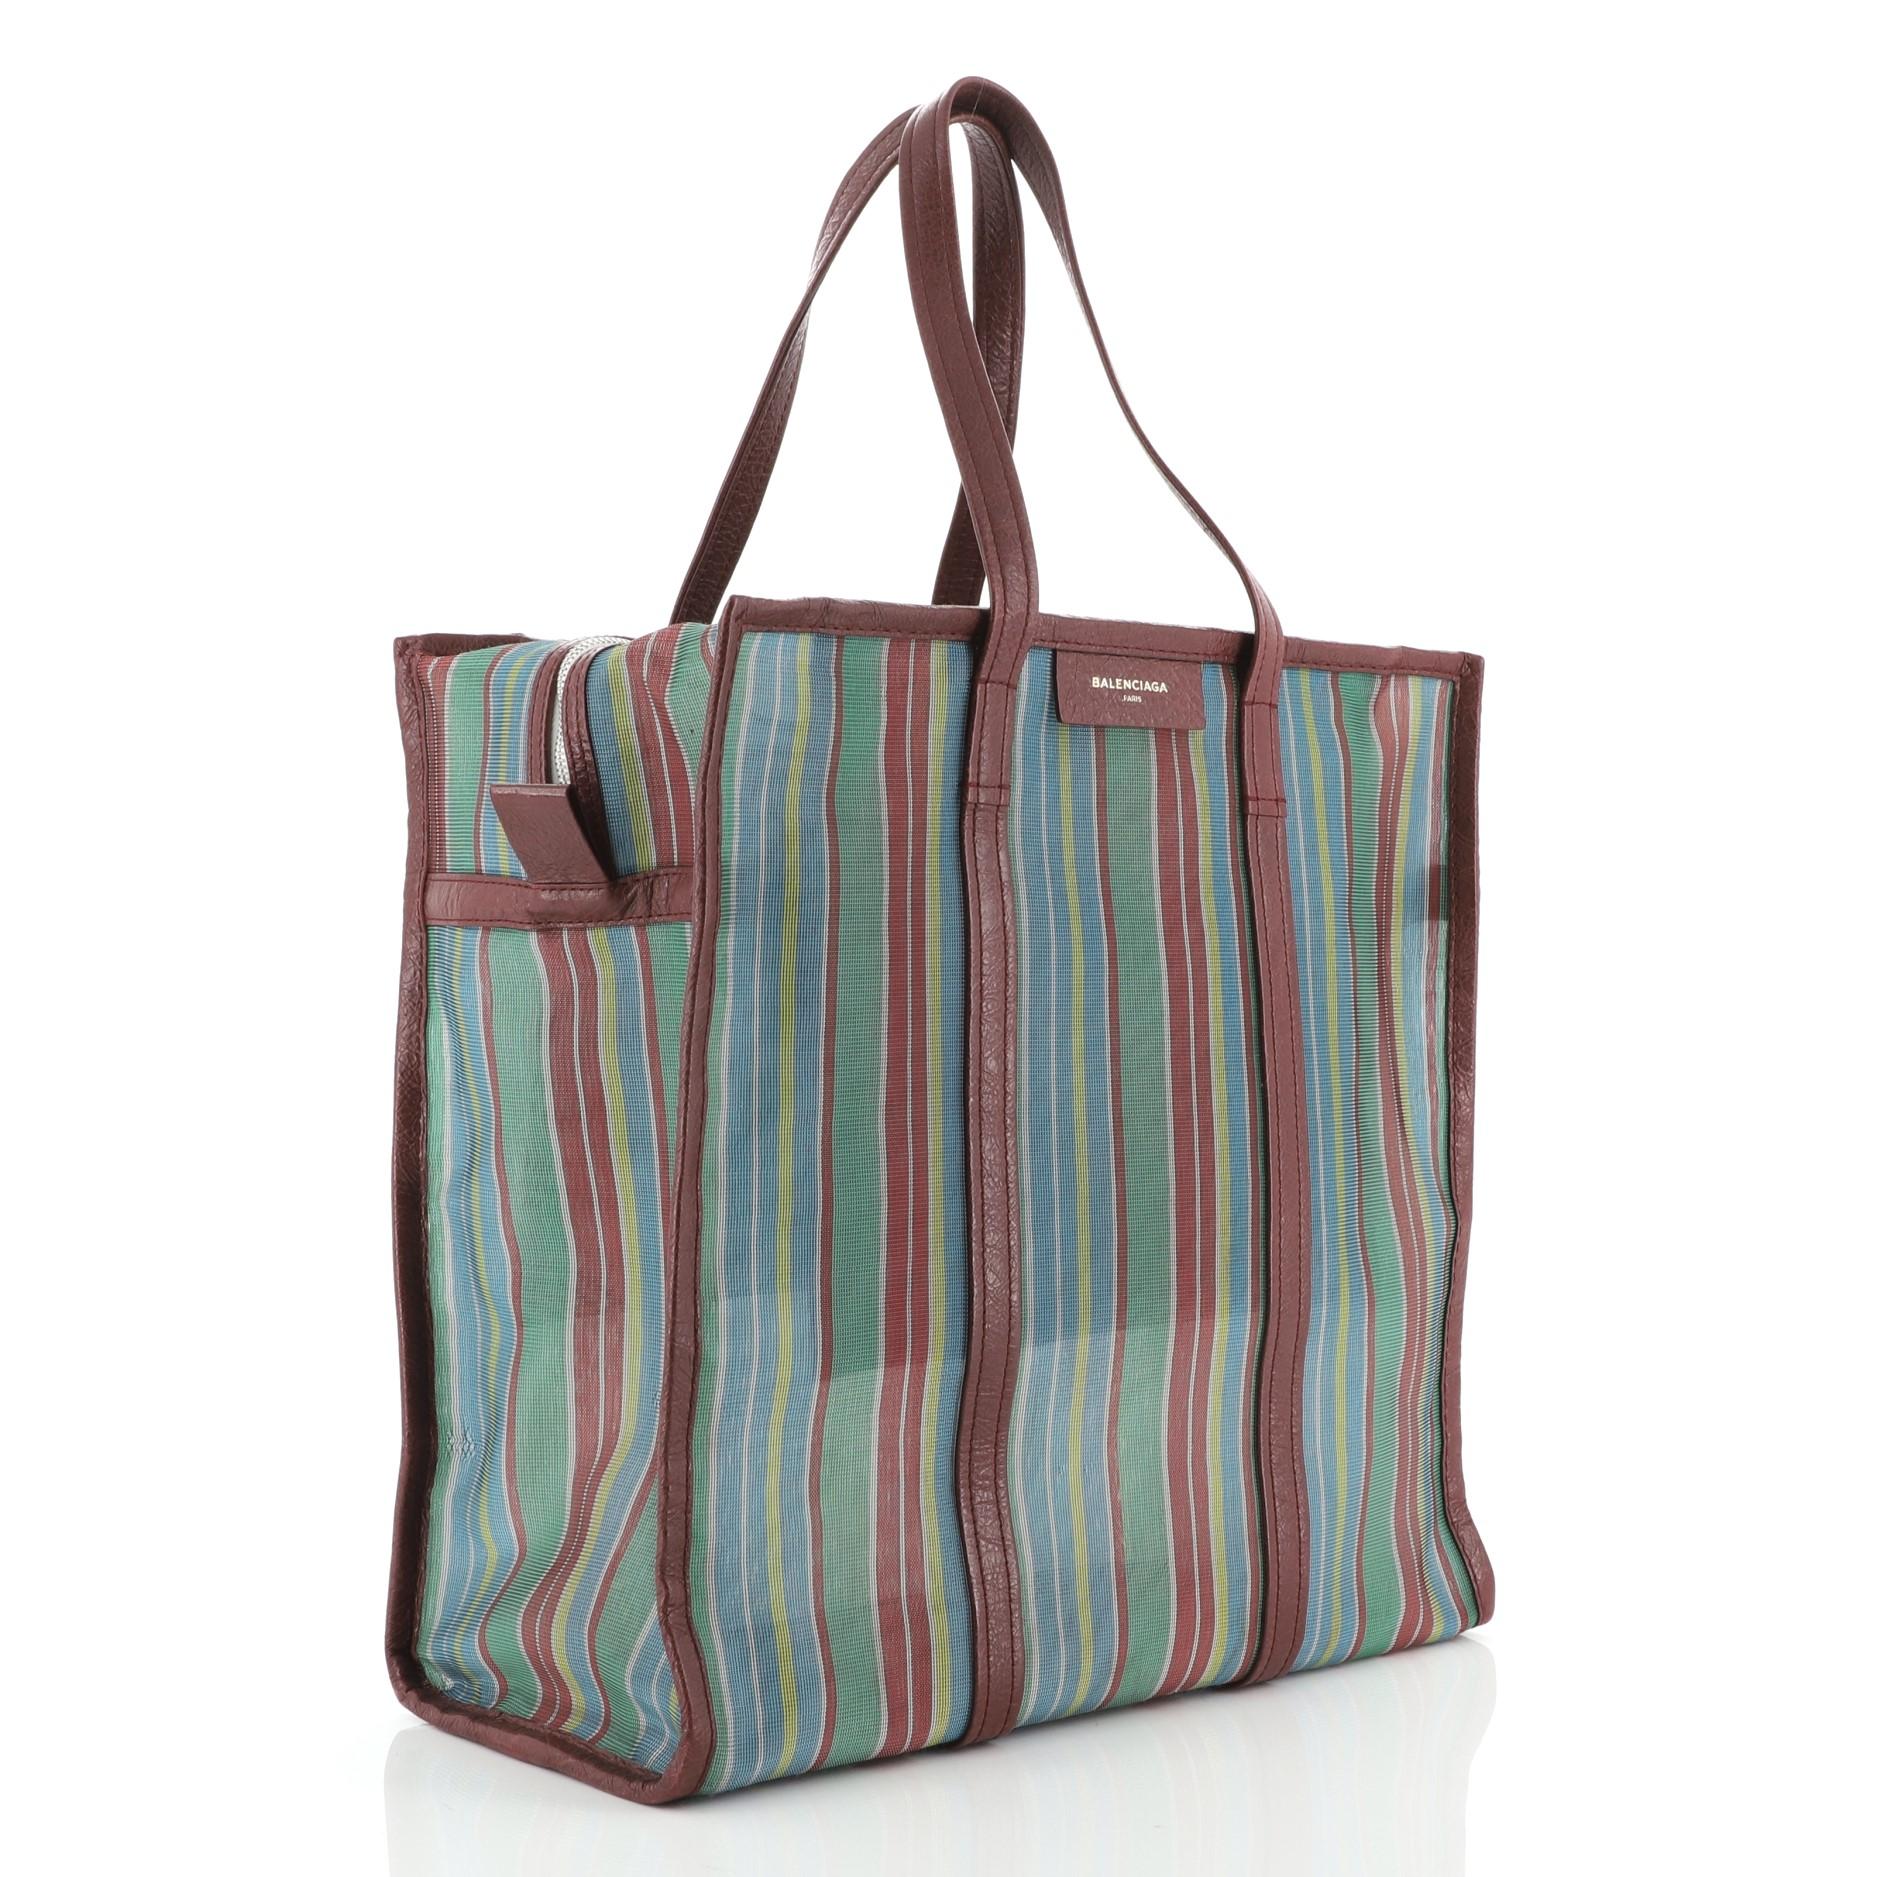 balenciaga striped bag